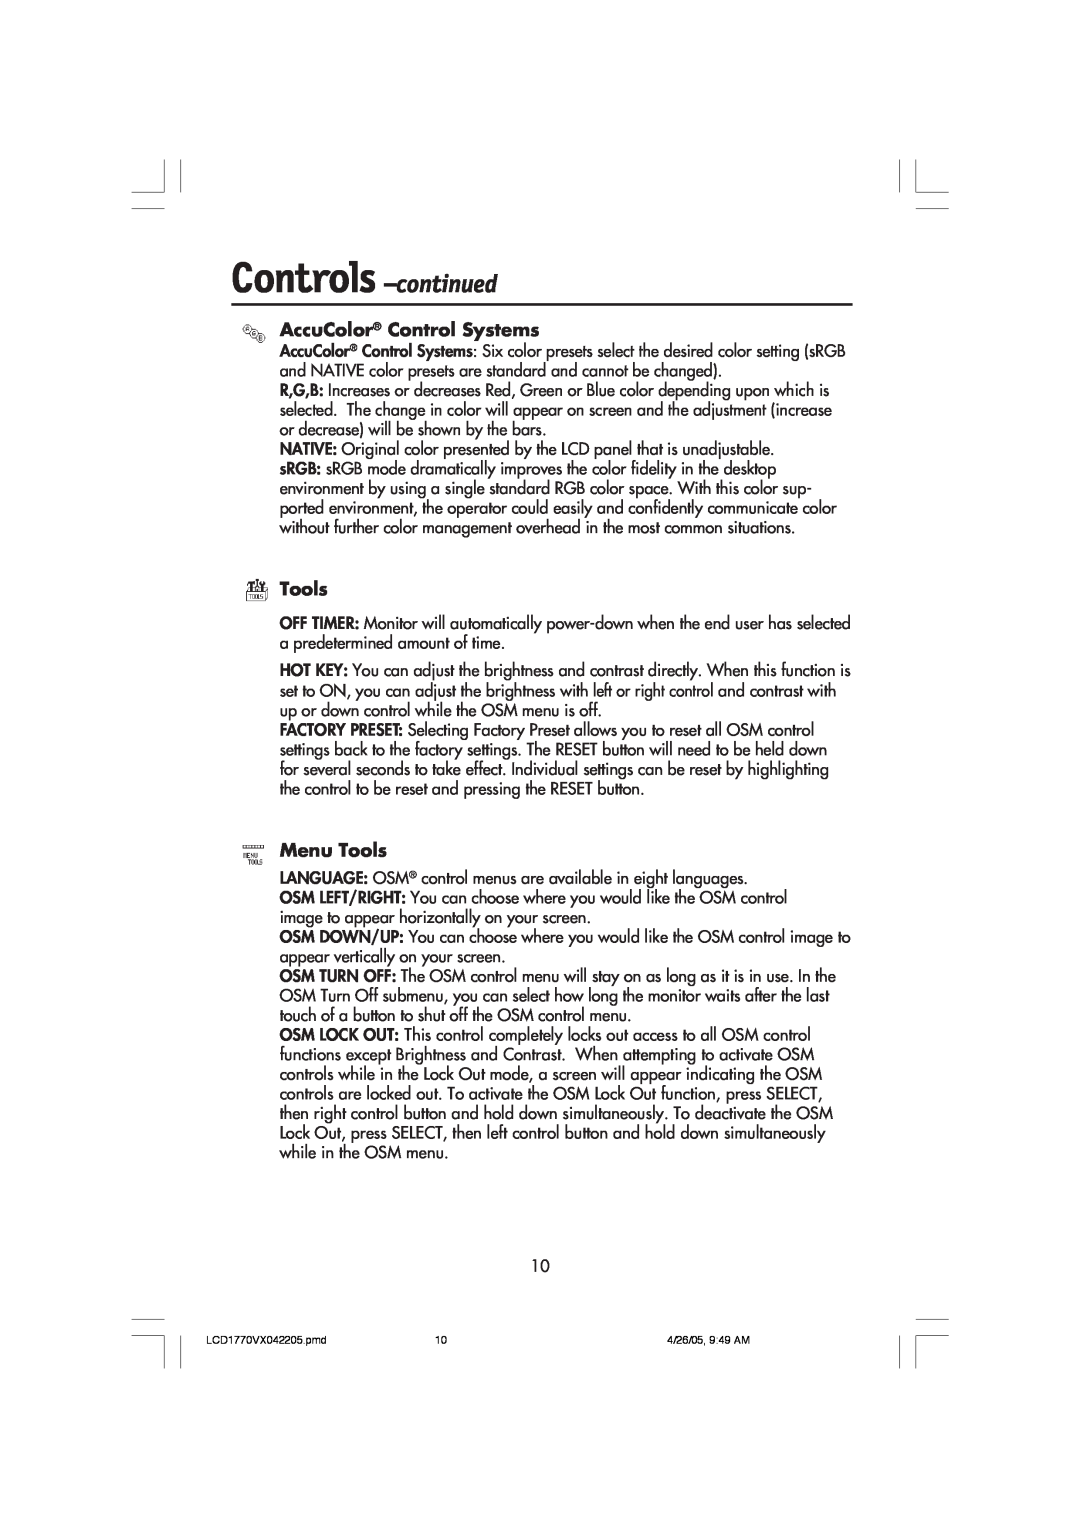 NEC LCD1770VX user manual Controls -continued, AccuColor Control Systems, Menu Tools 